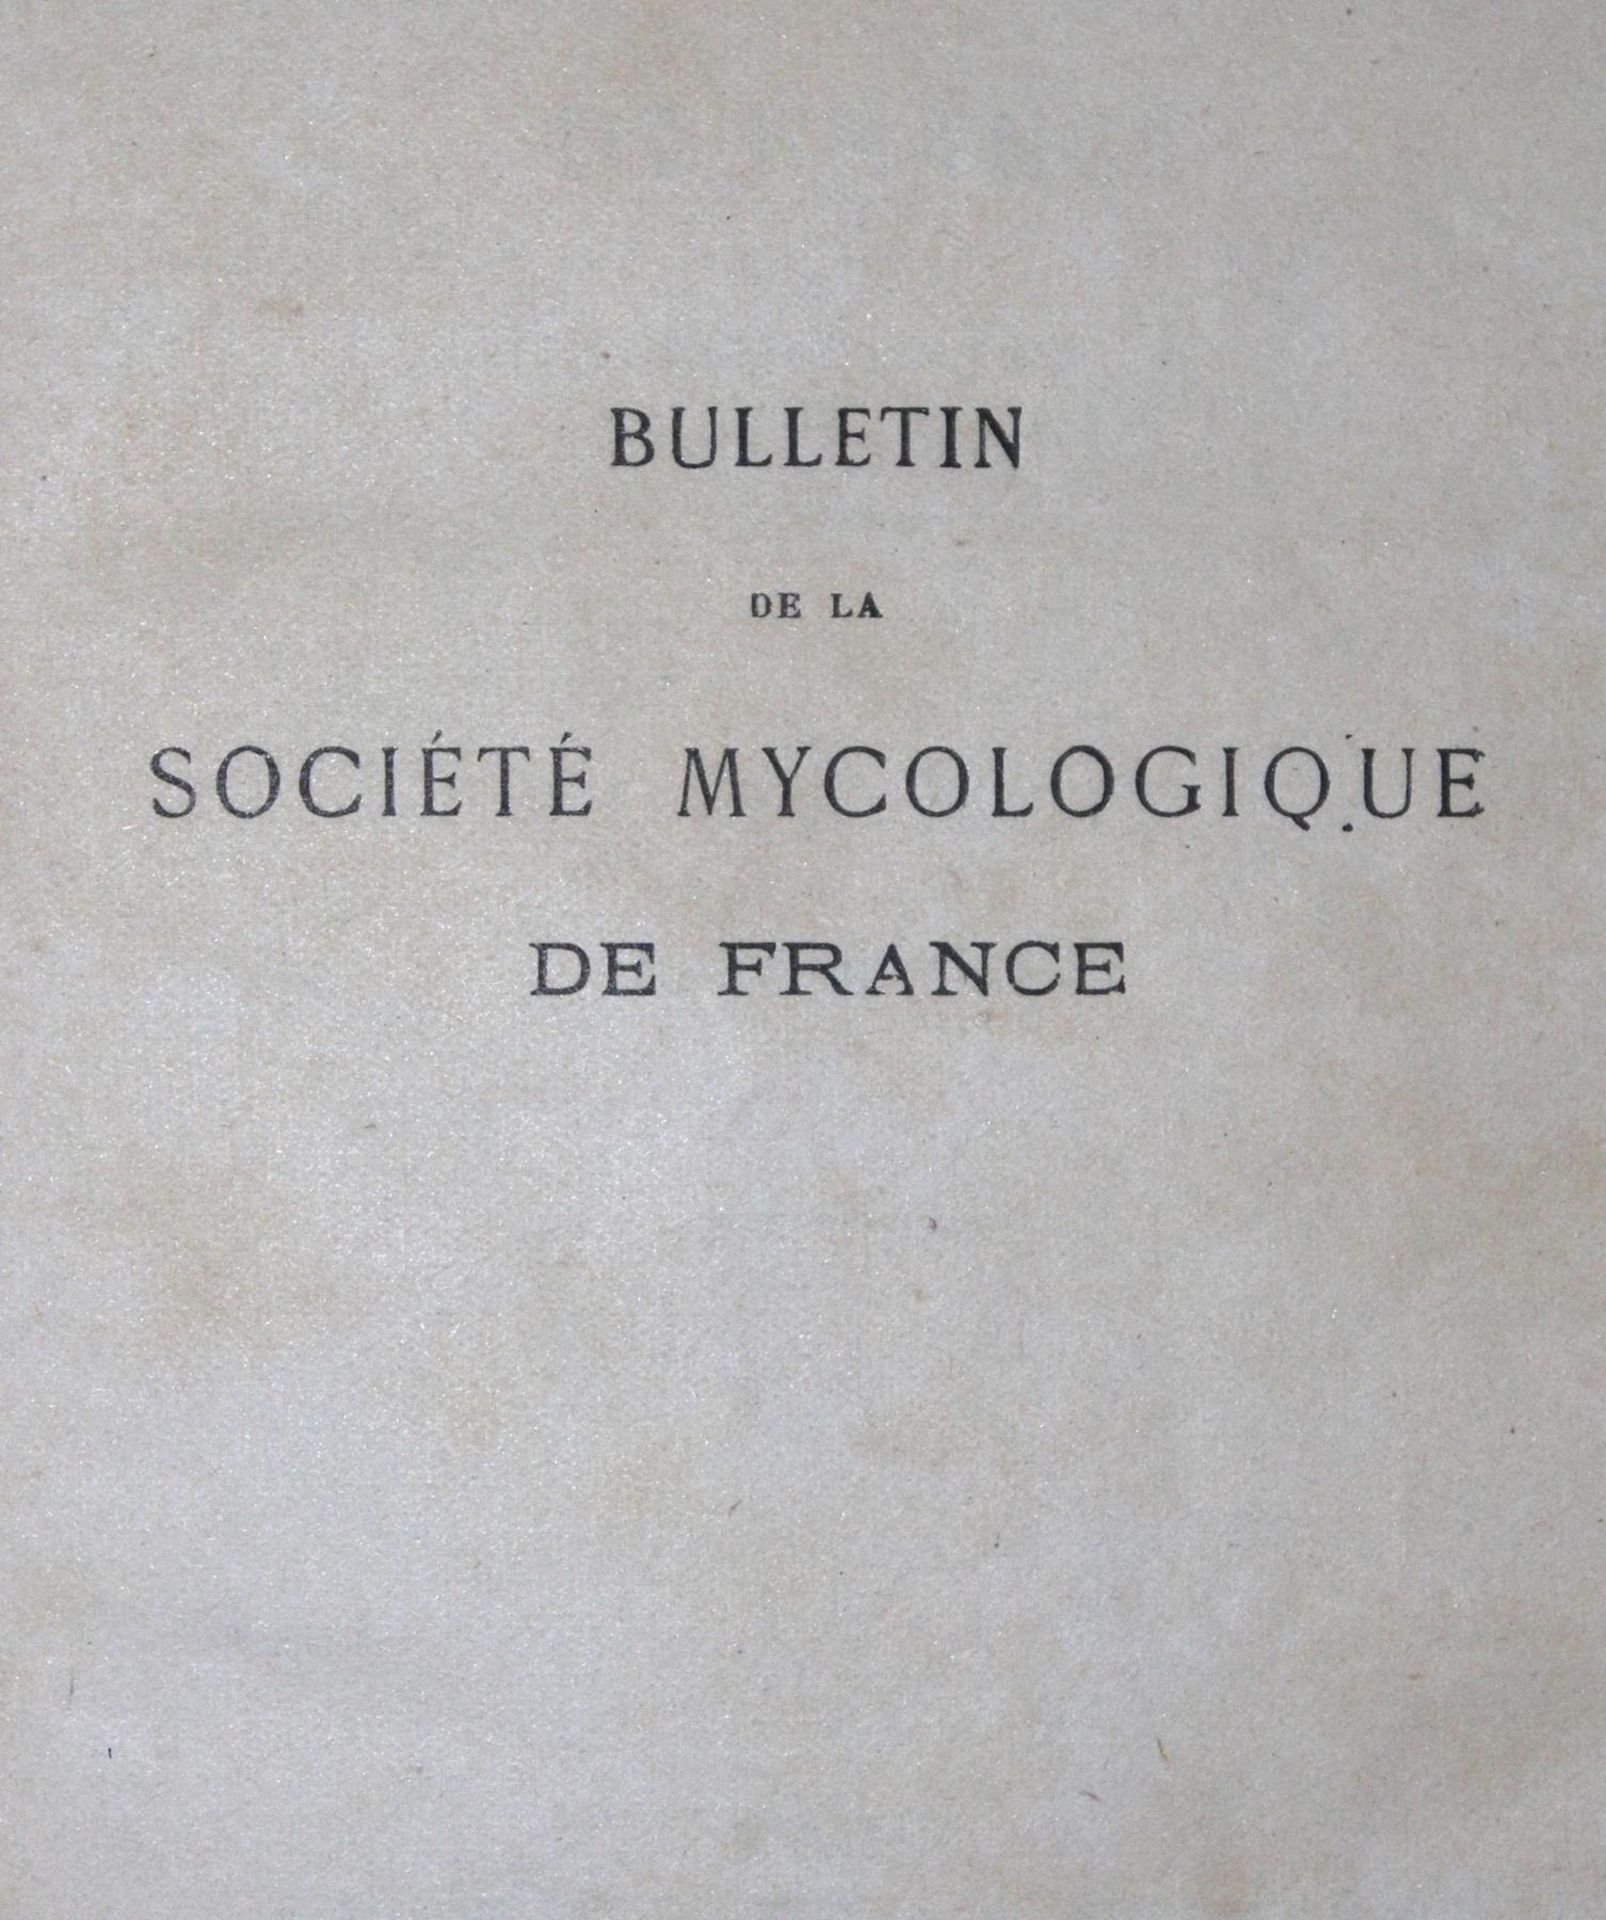 Bulletin de la Societe Mycologique - Image 2 of 3